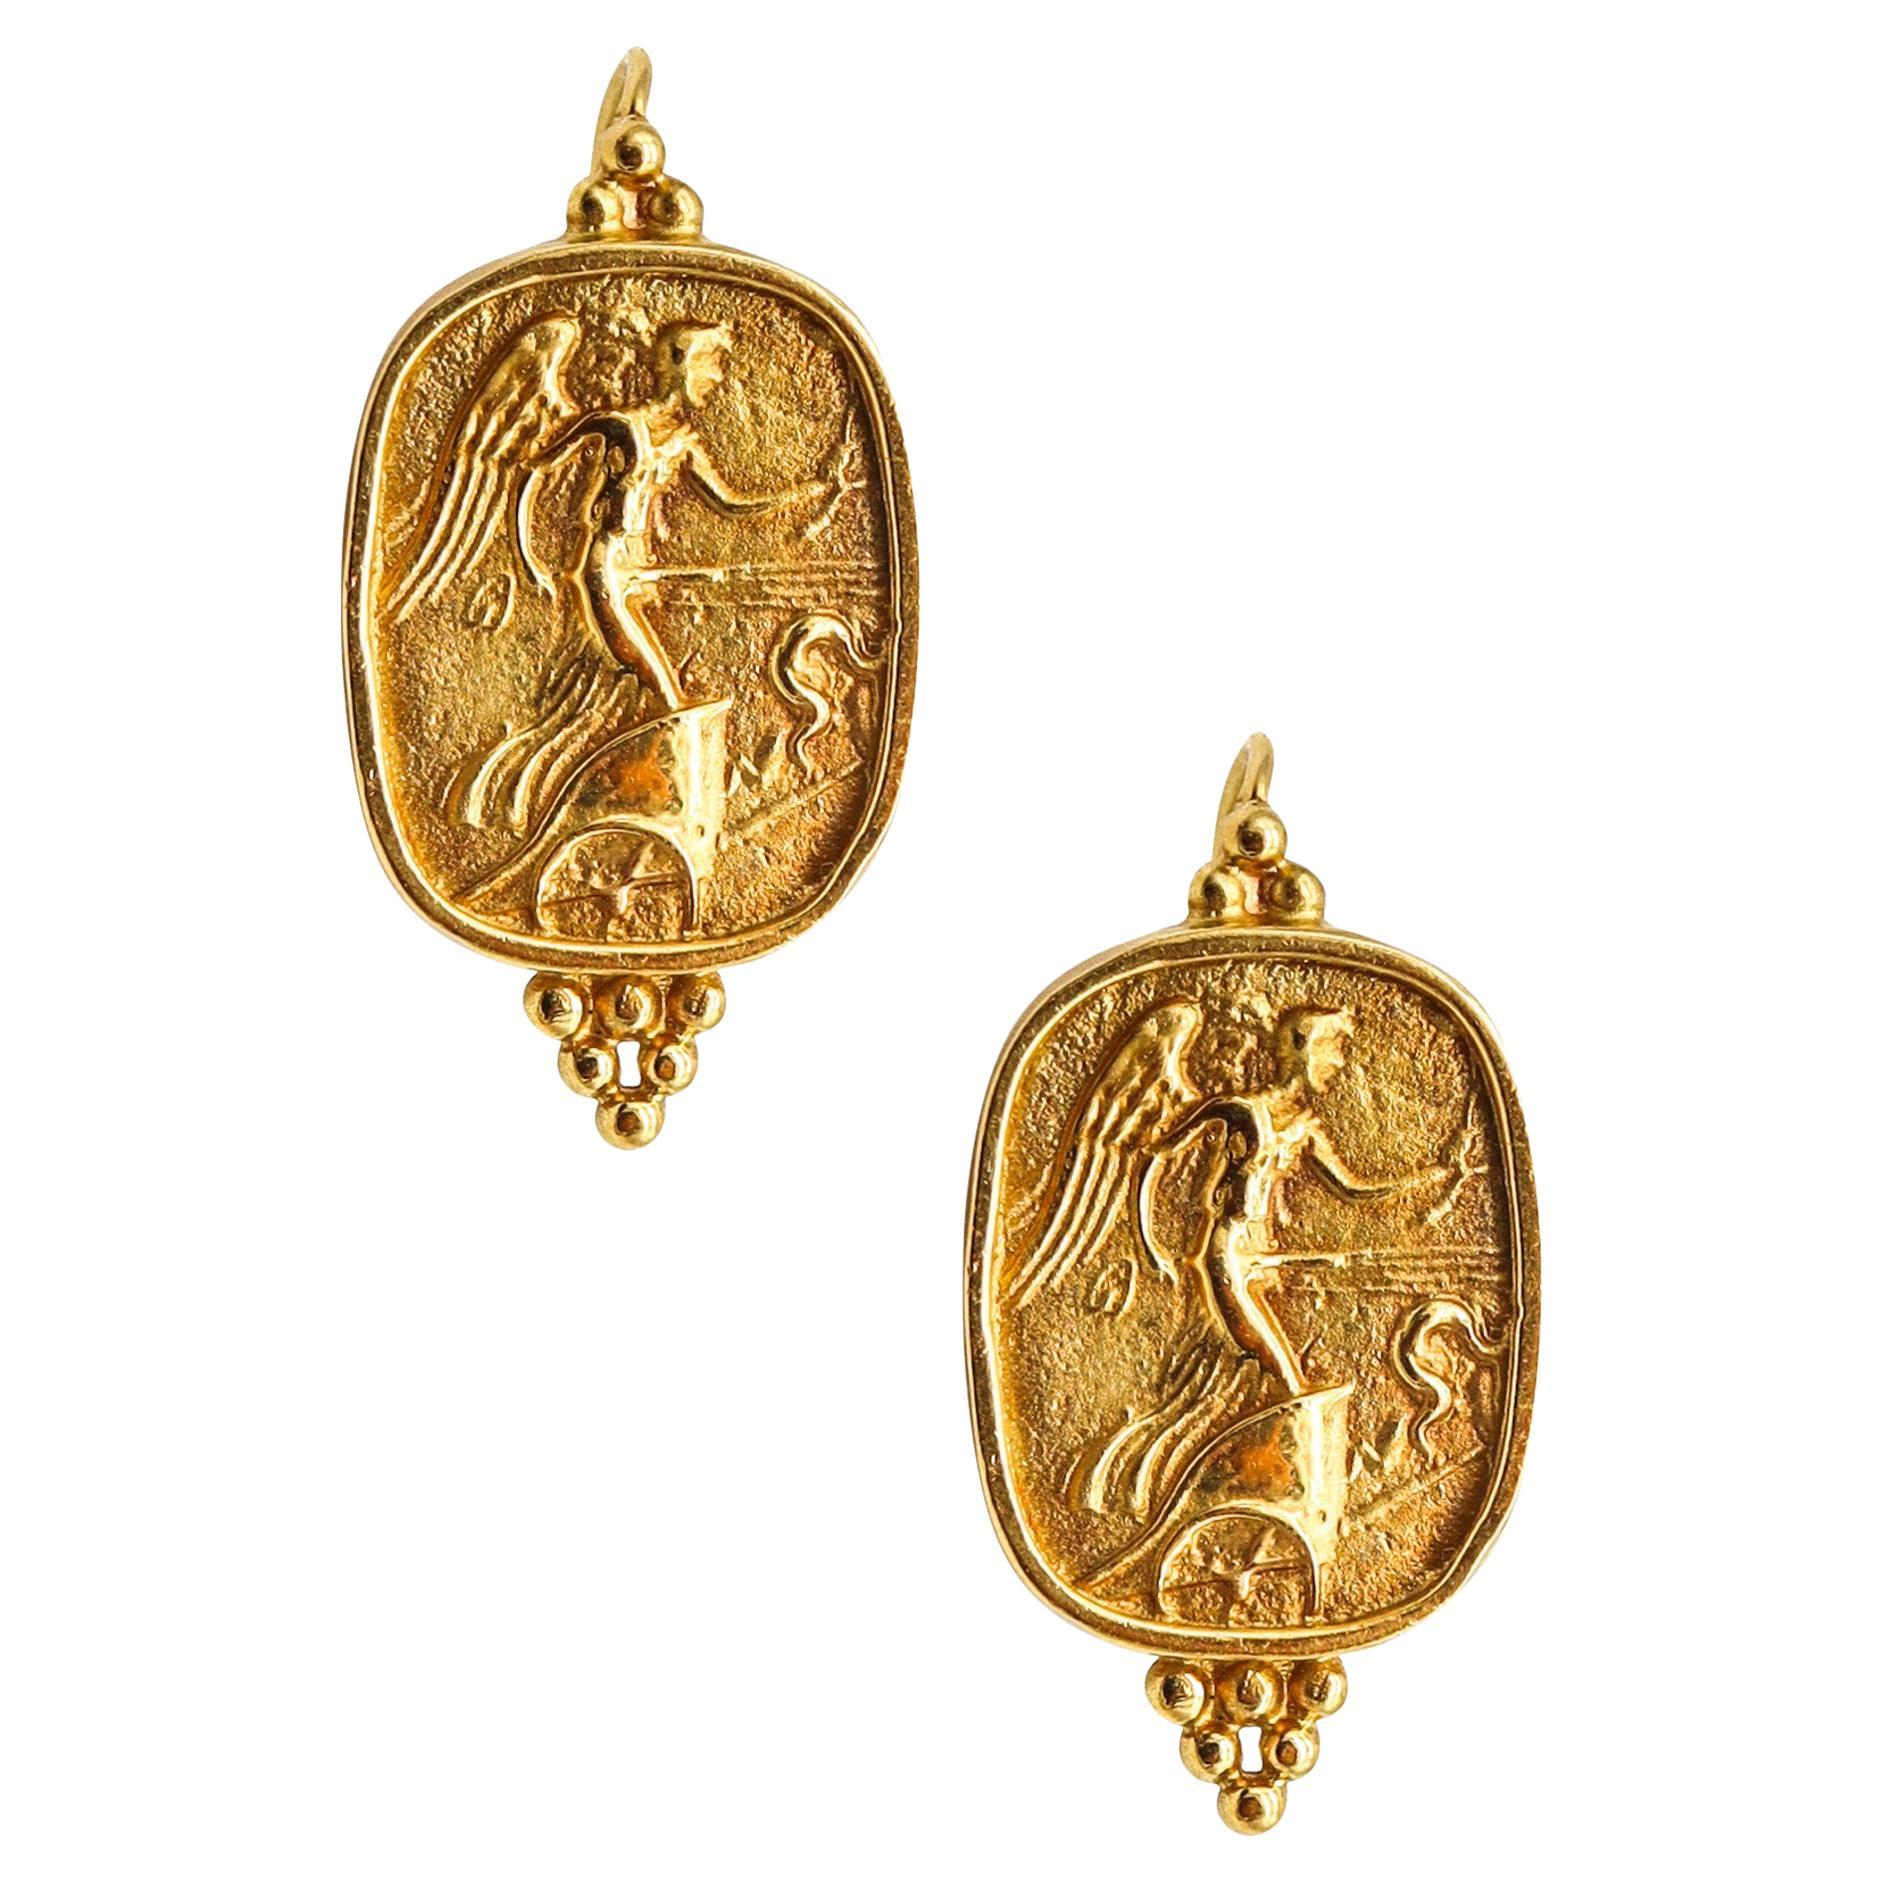 Seidengang Roman Revival Classic Drop Earrings in 18kt Yellow Gold